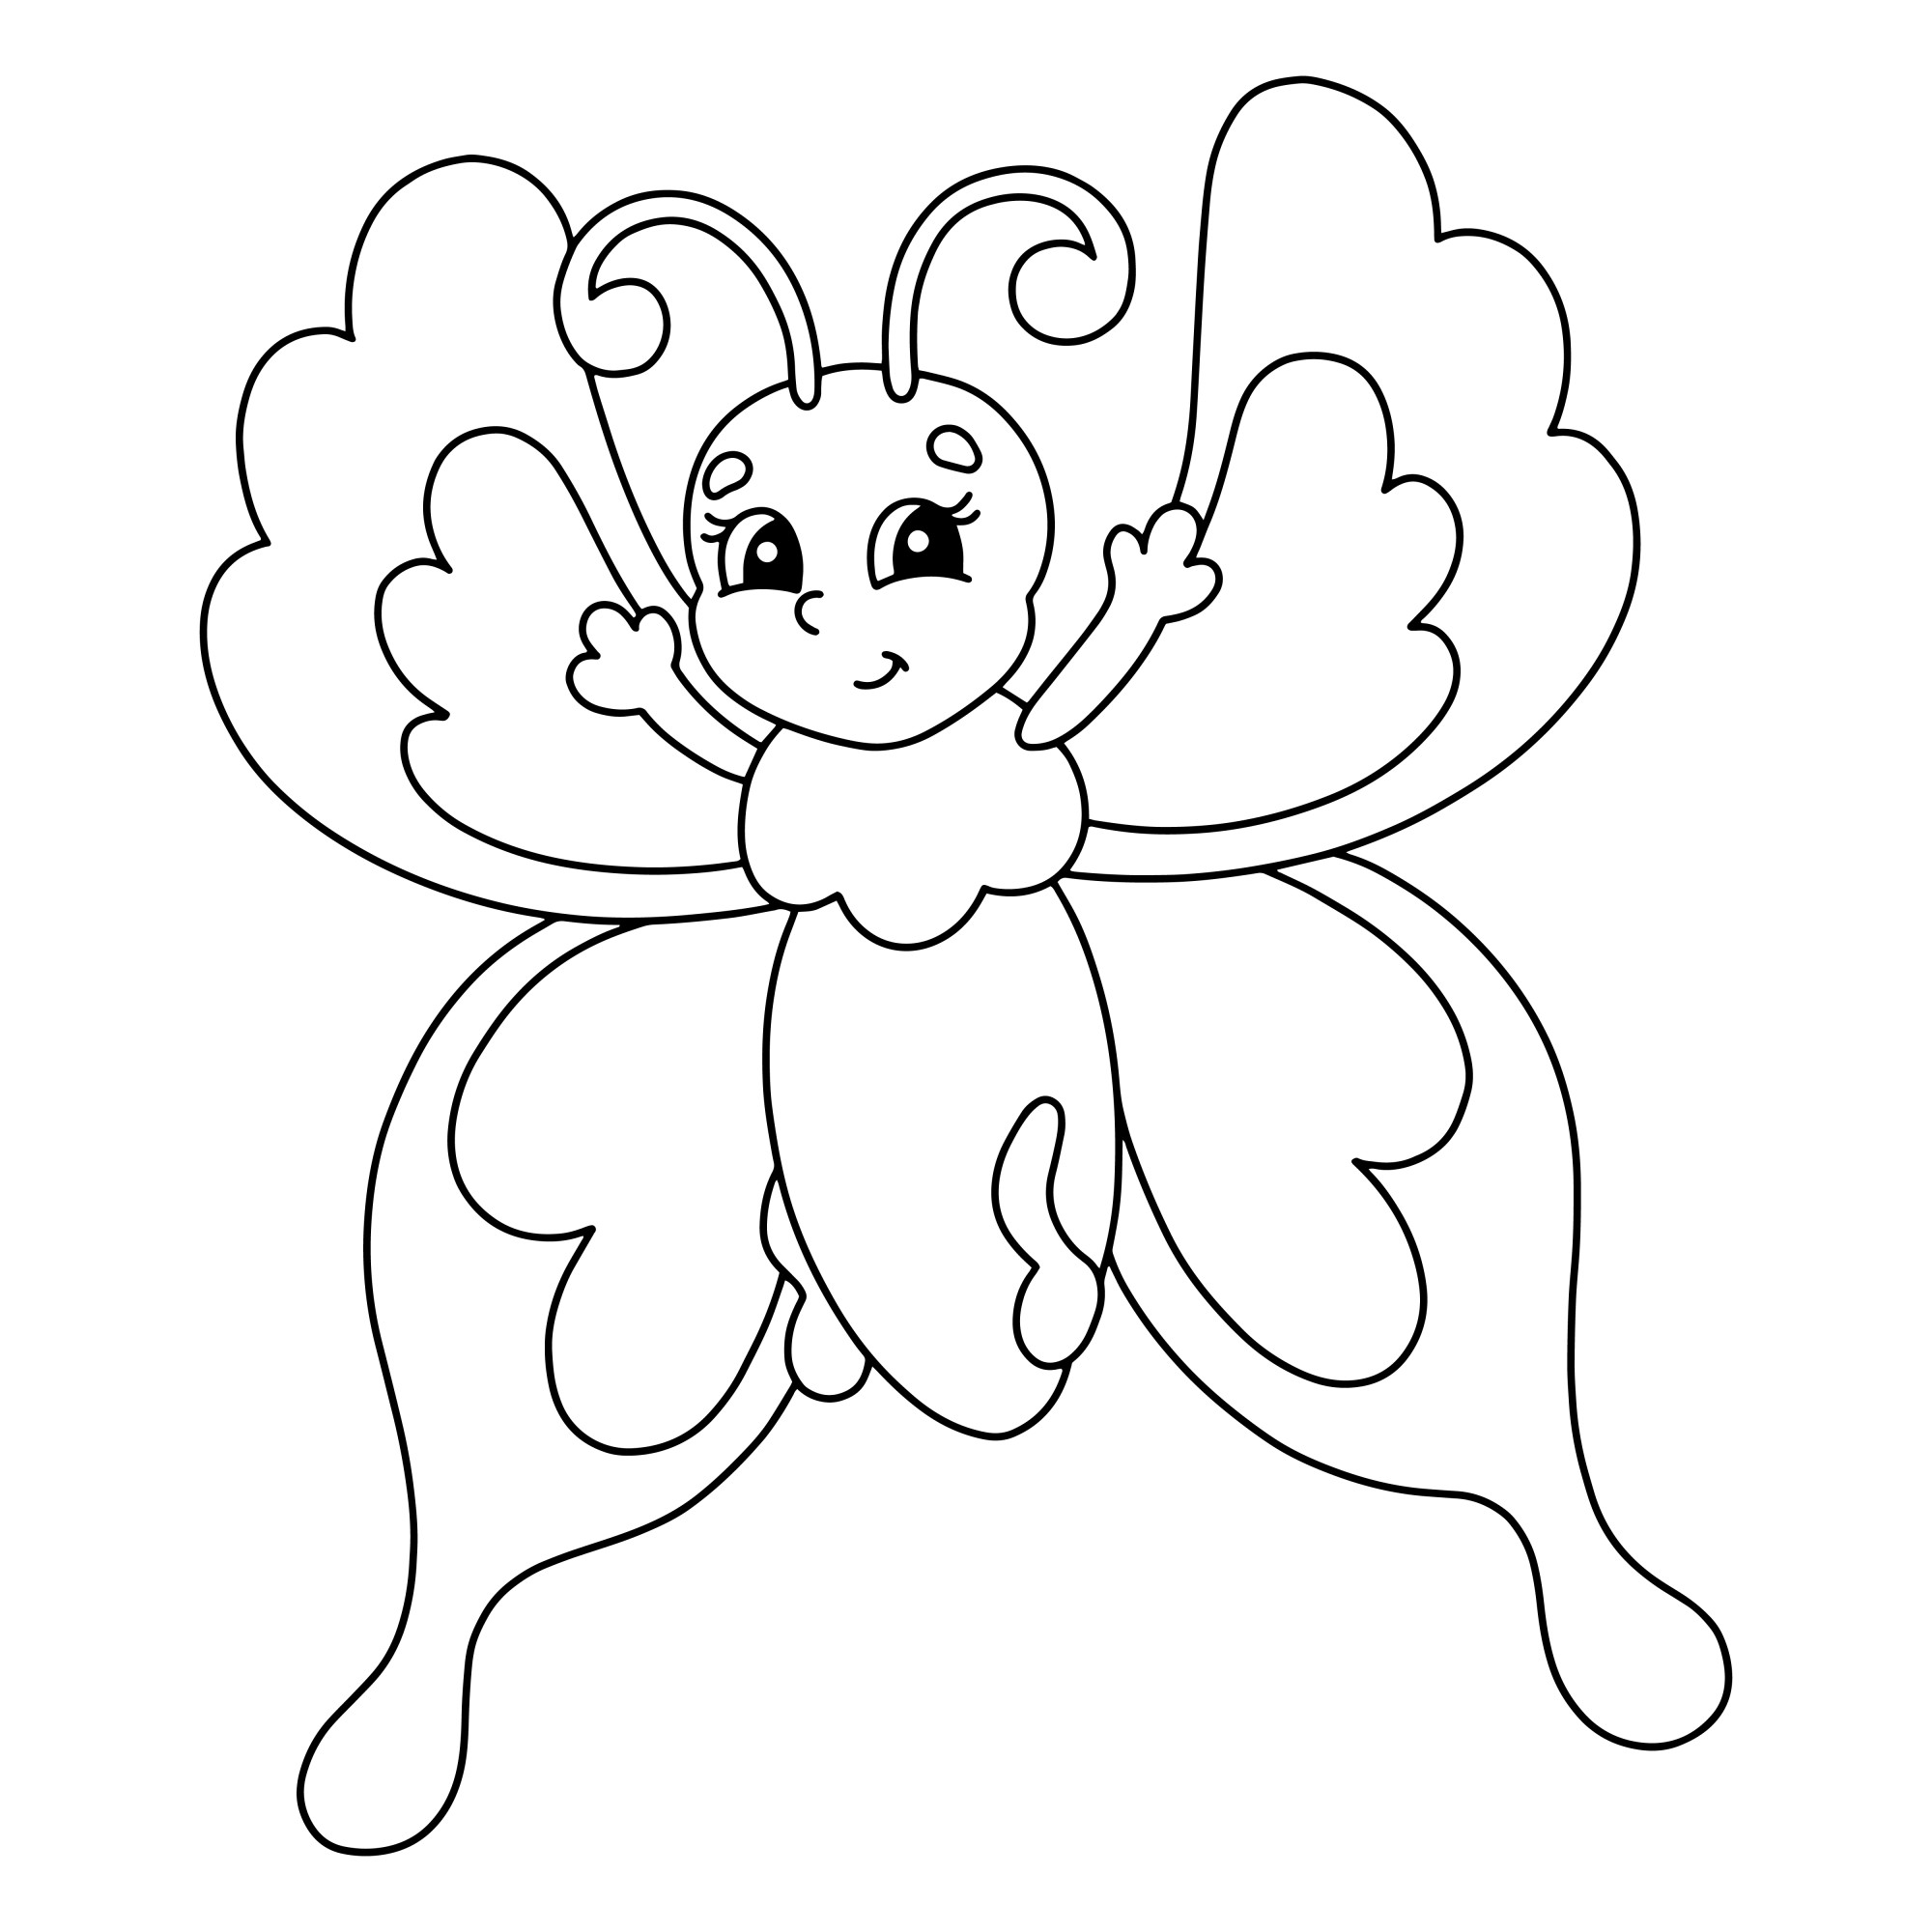 Раскраска для детей: мультяшный персонаж бабочка с поднятыми лапками